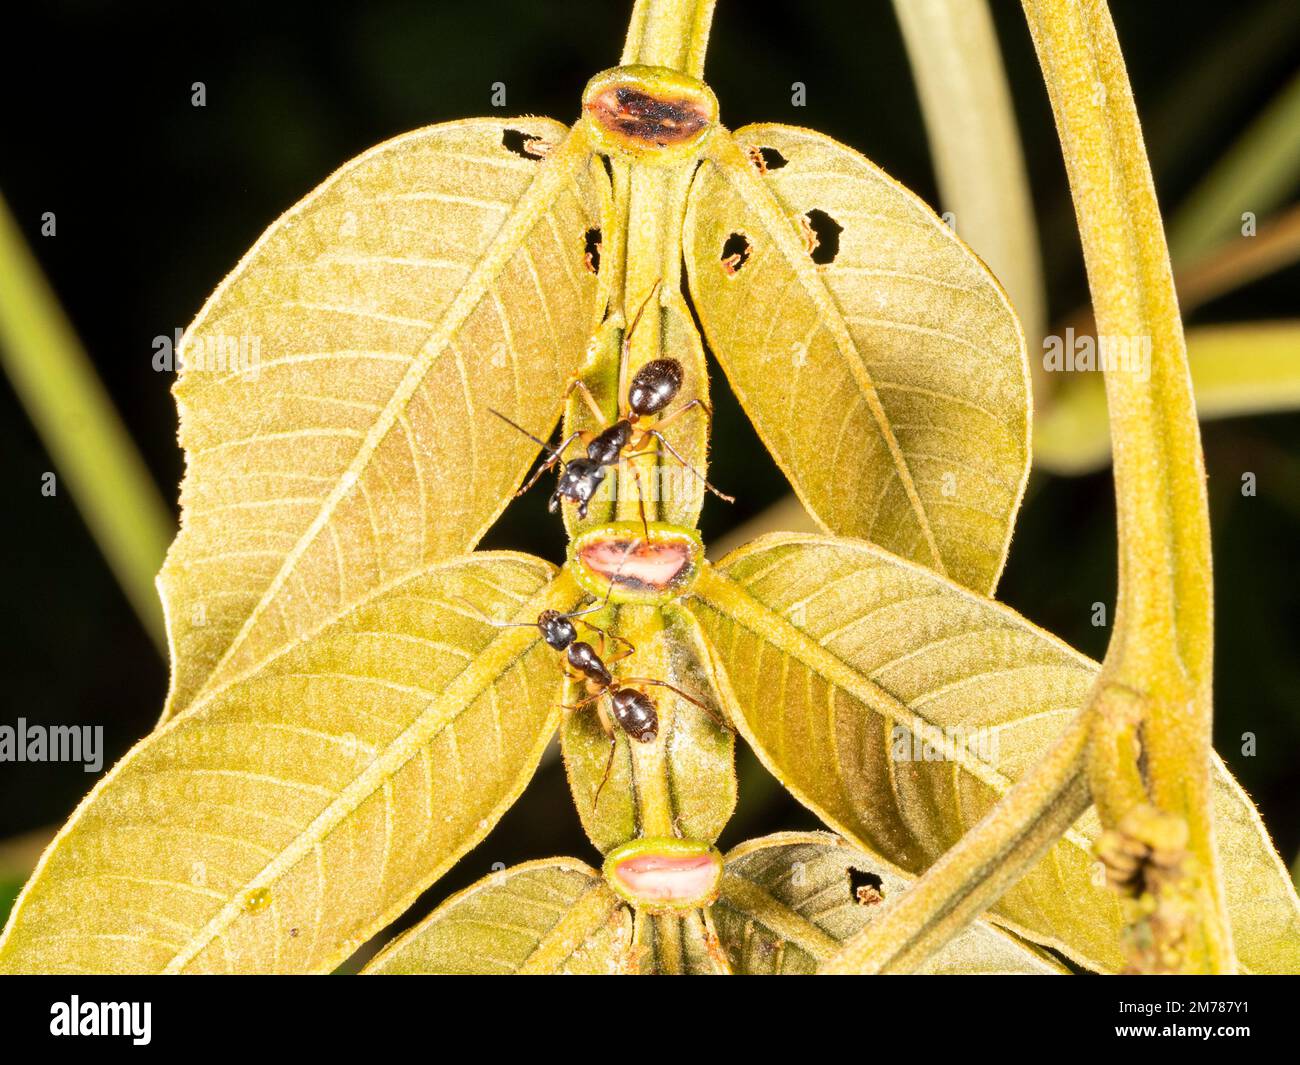 Hormigas bebiendo néctar de nectarios extra-florales en la hoja de un árbol Inga en la selva tropical, Ecuador Foto de stock